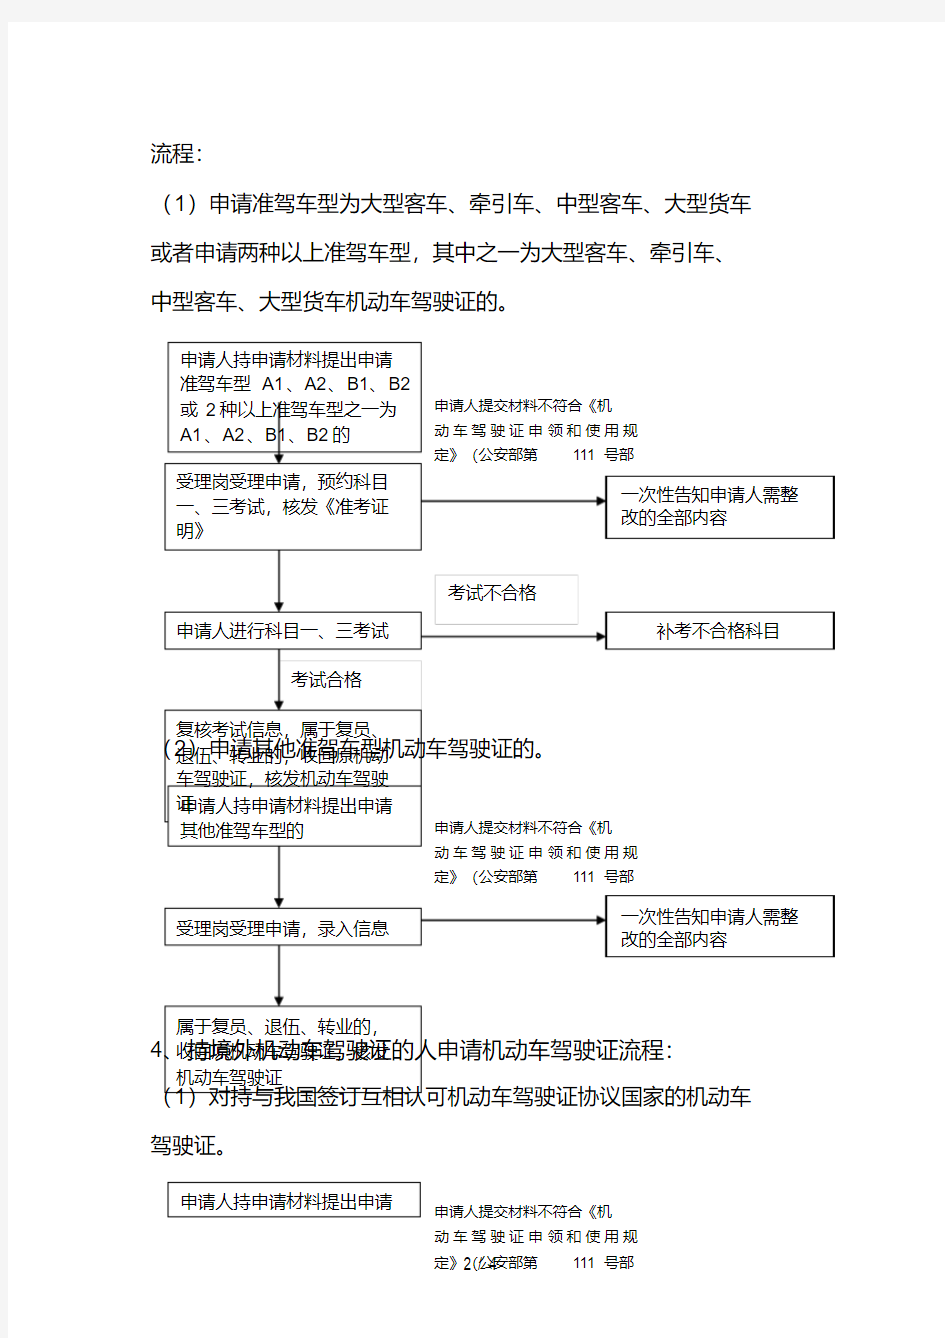 机动车驾驶证核发与审验流程图.pdf